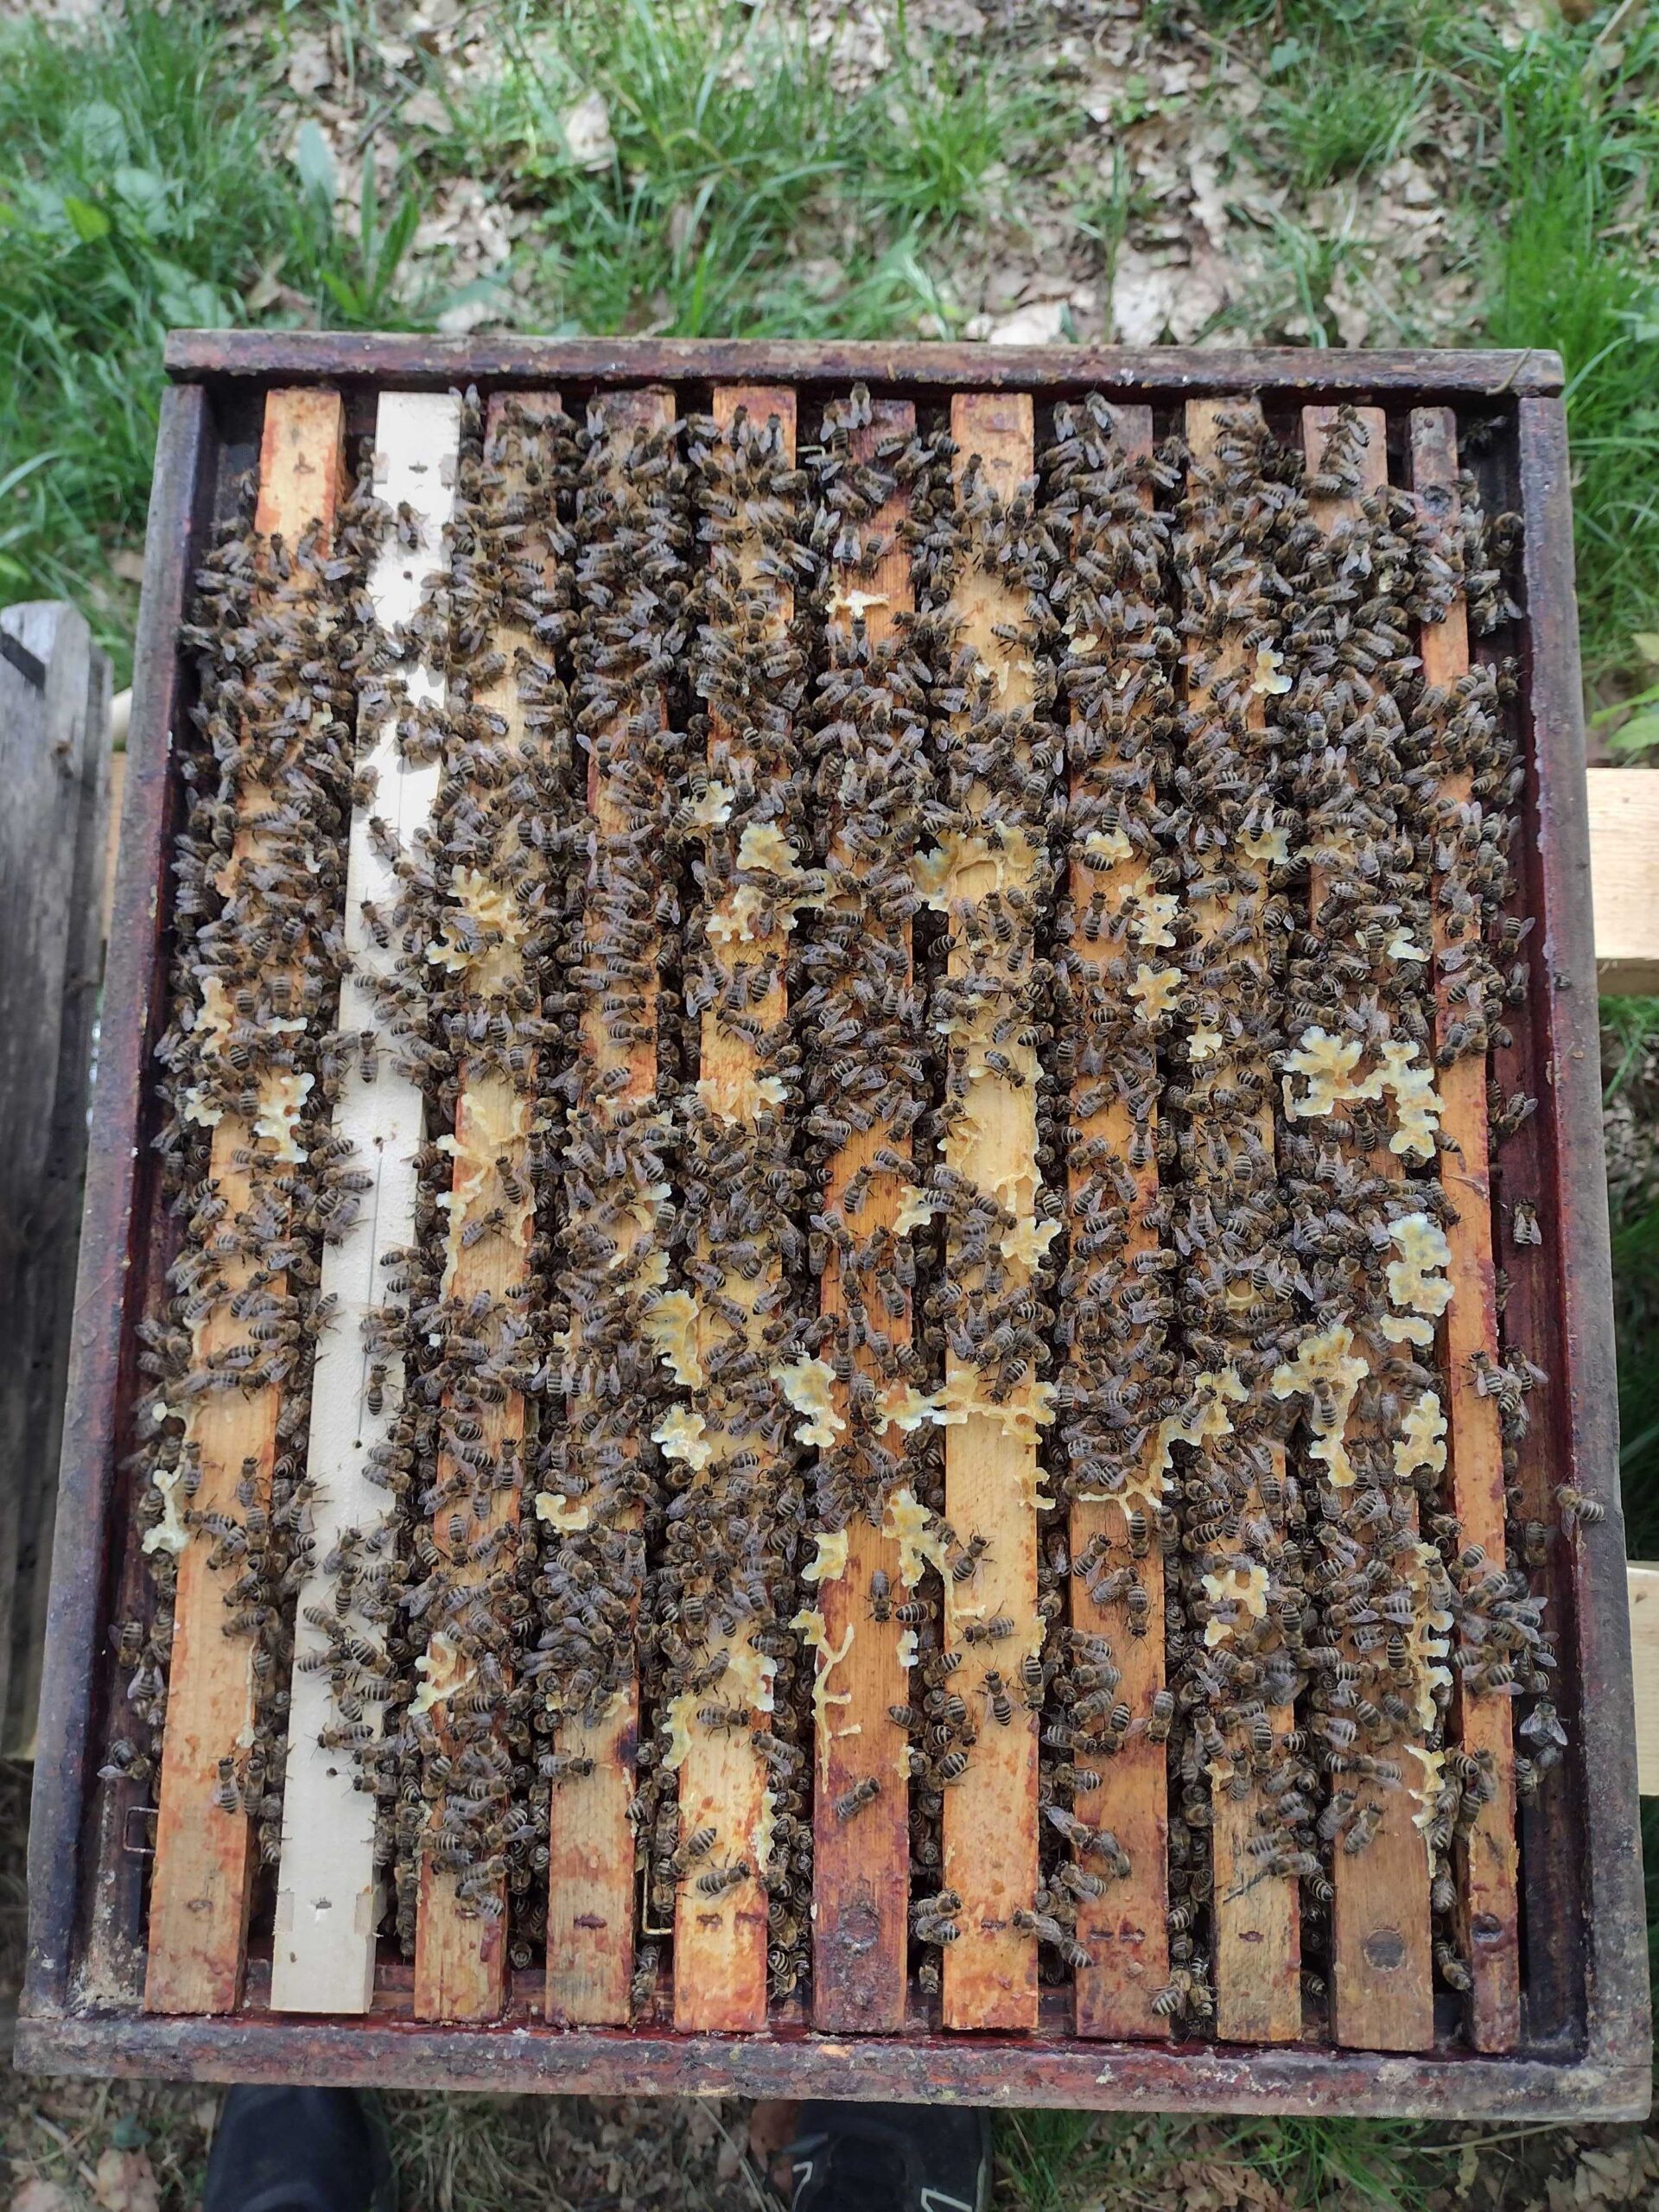 Toevoegen van honingzolders ter preventie van zwermen